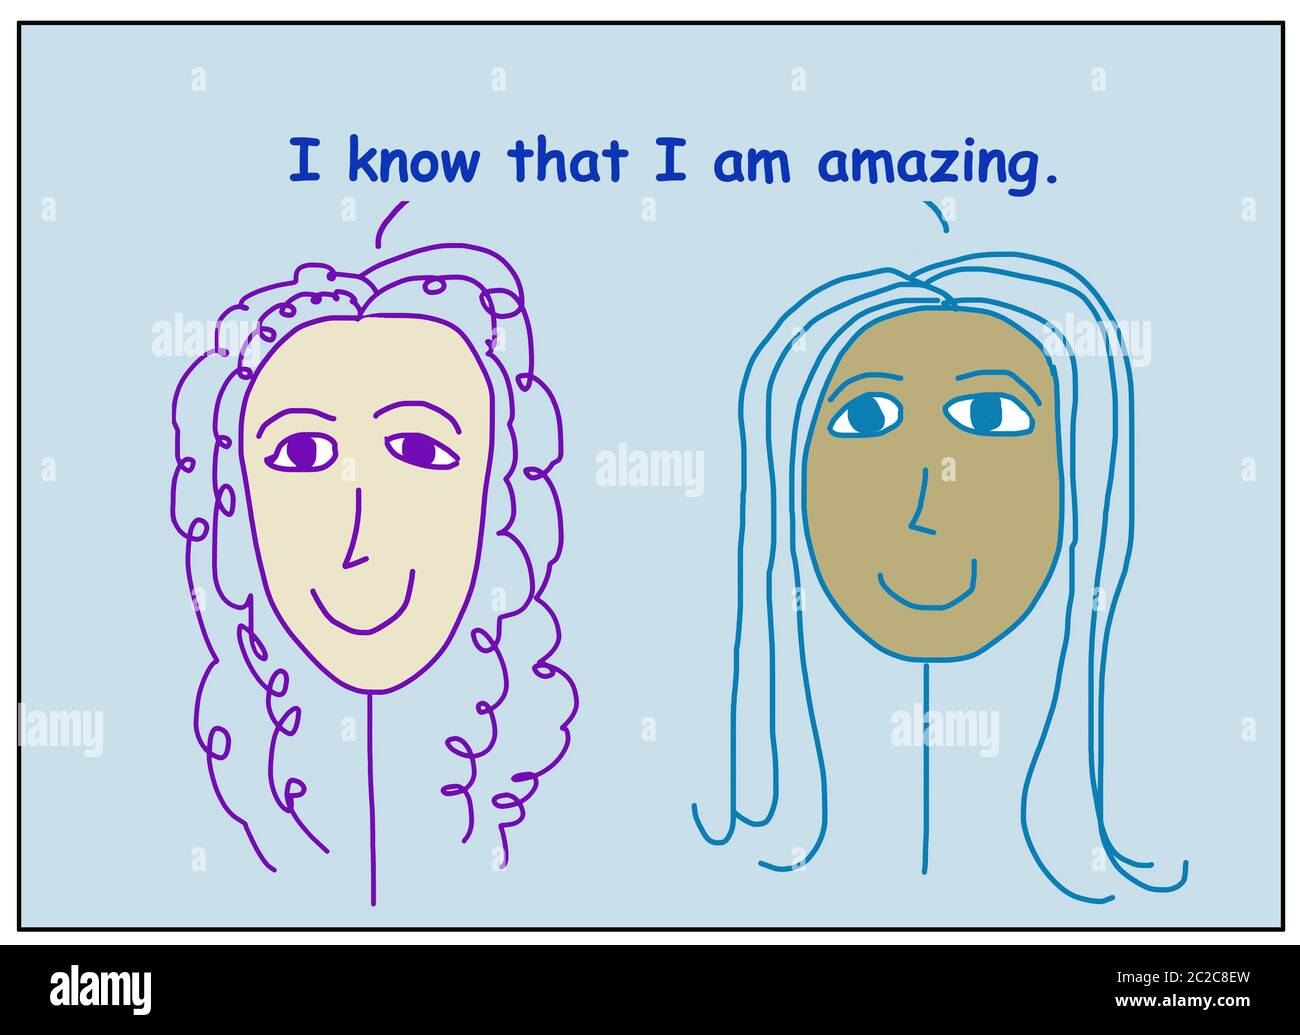 Farb-Cartoon von zwei schönen, lächelnden und ethnisch verschiedenen Frauen besagt, dass ich weiß, dass ich erstaunlich bin. Stockfoto